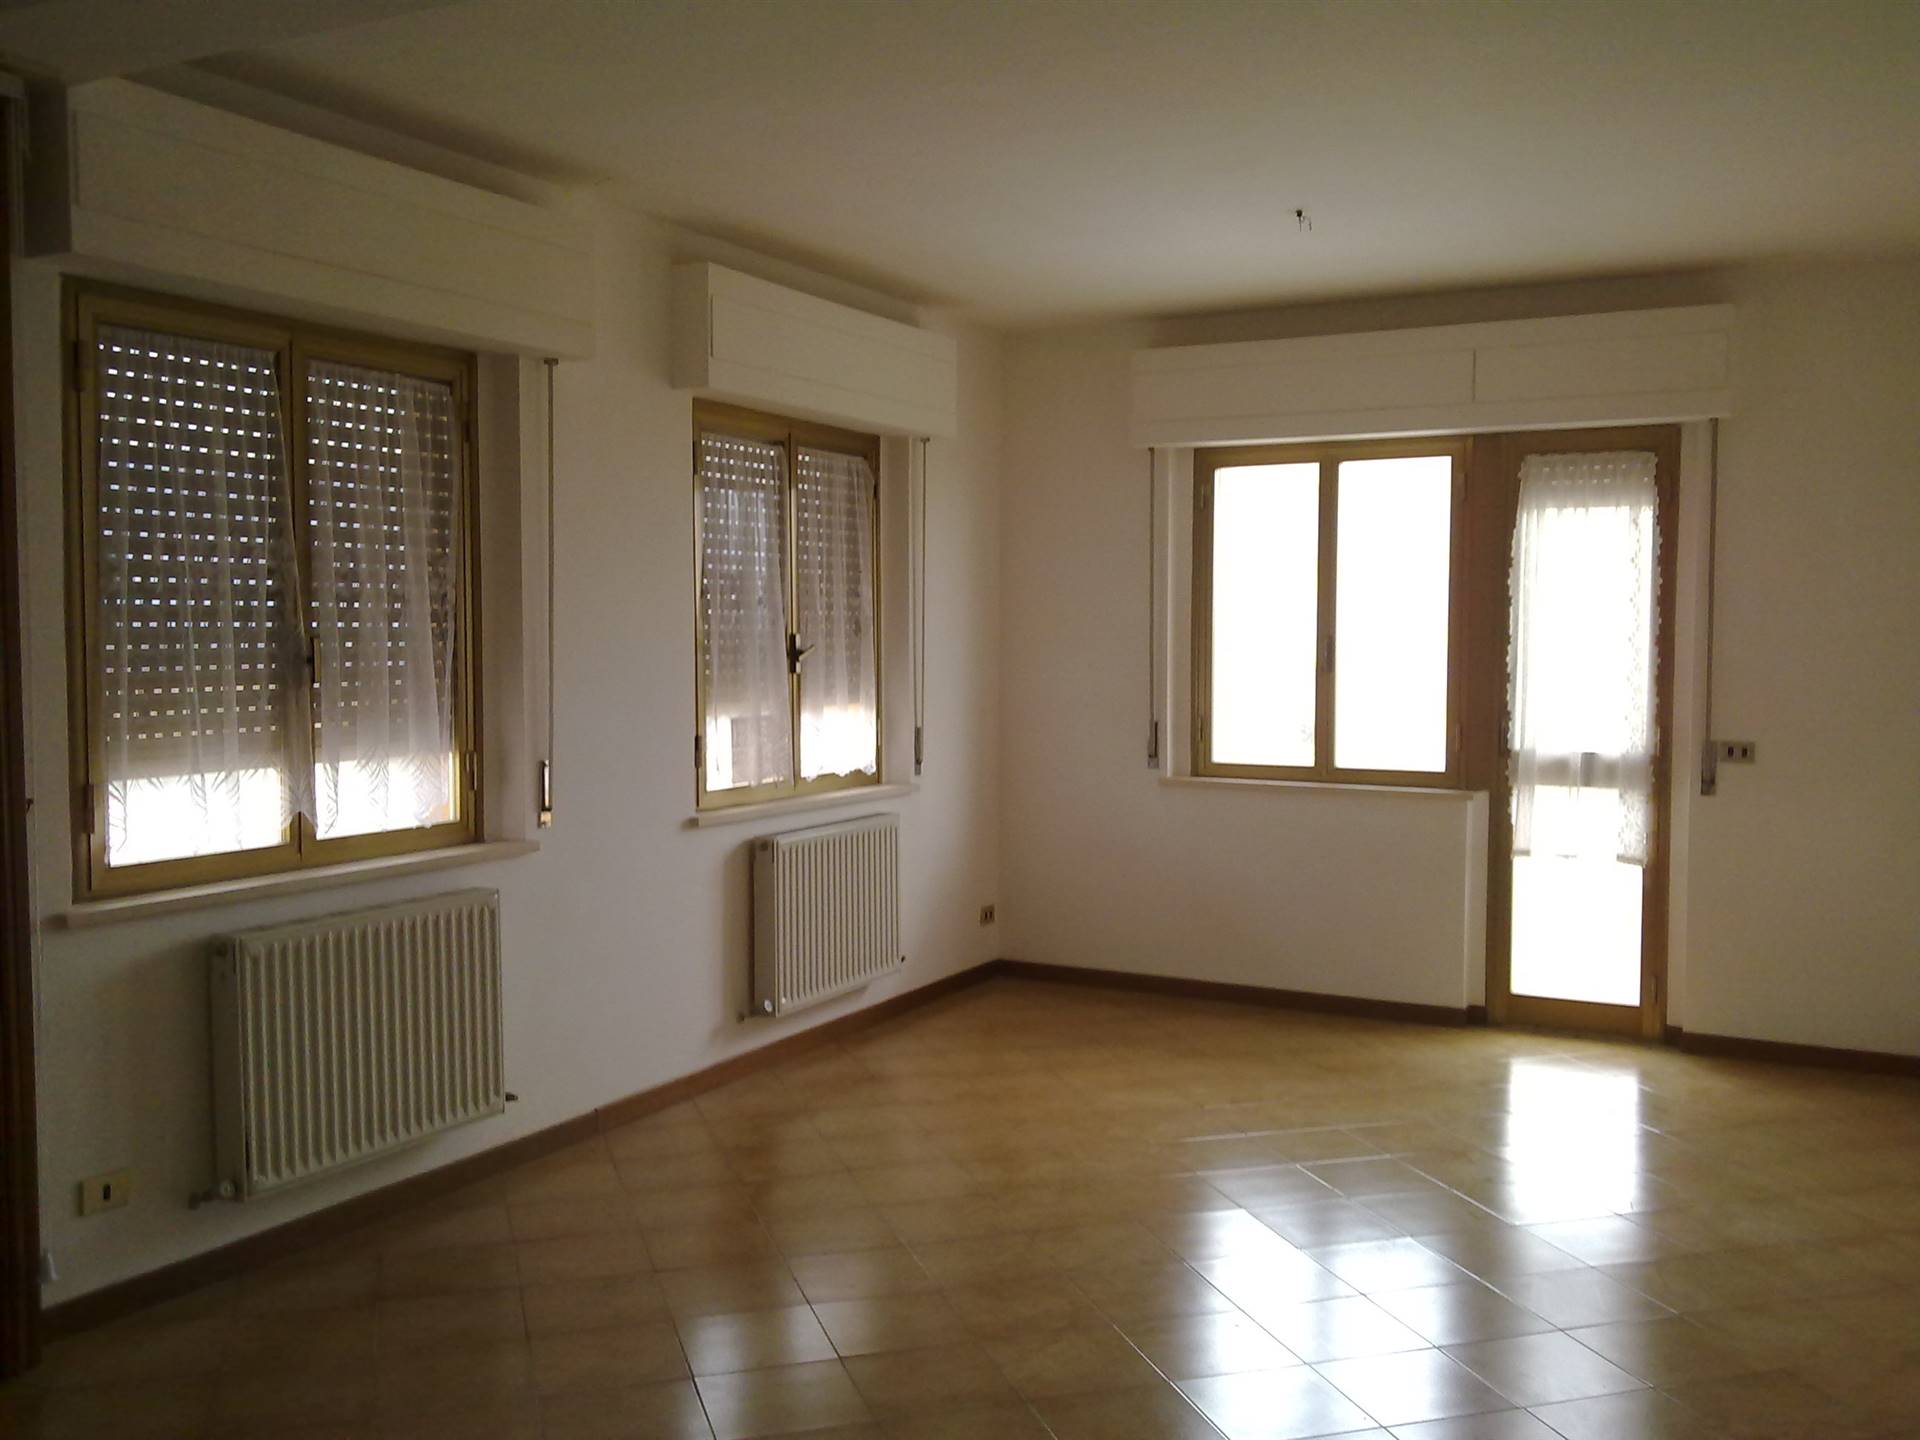 Appartamento in vendita a Chiusi, 4 locali, zona iano, prezzo € 65.000 | PortaleAgenzieImmobiliari.it